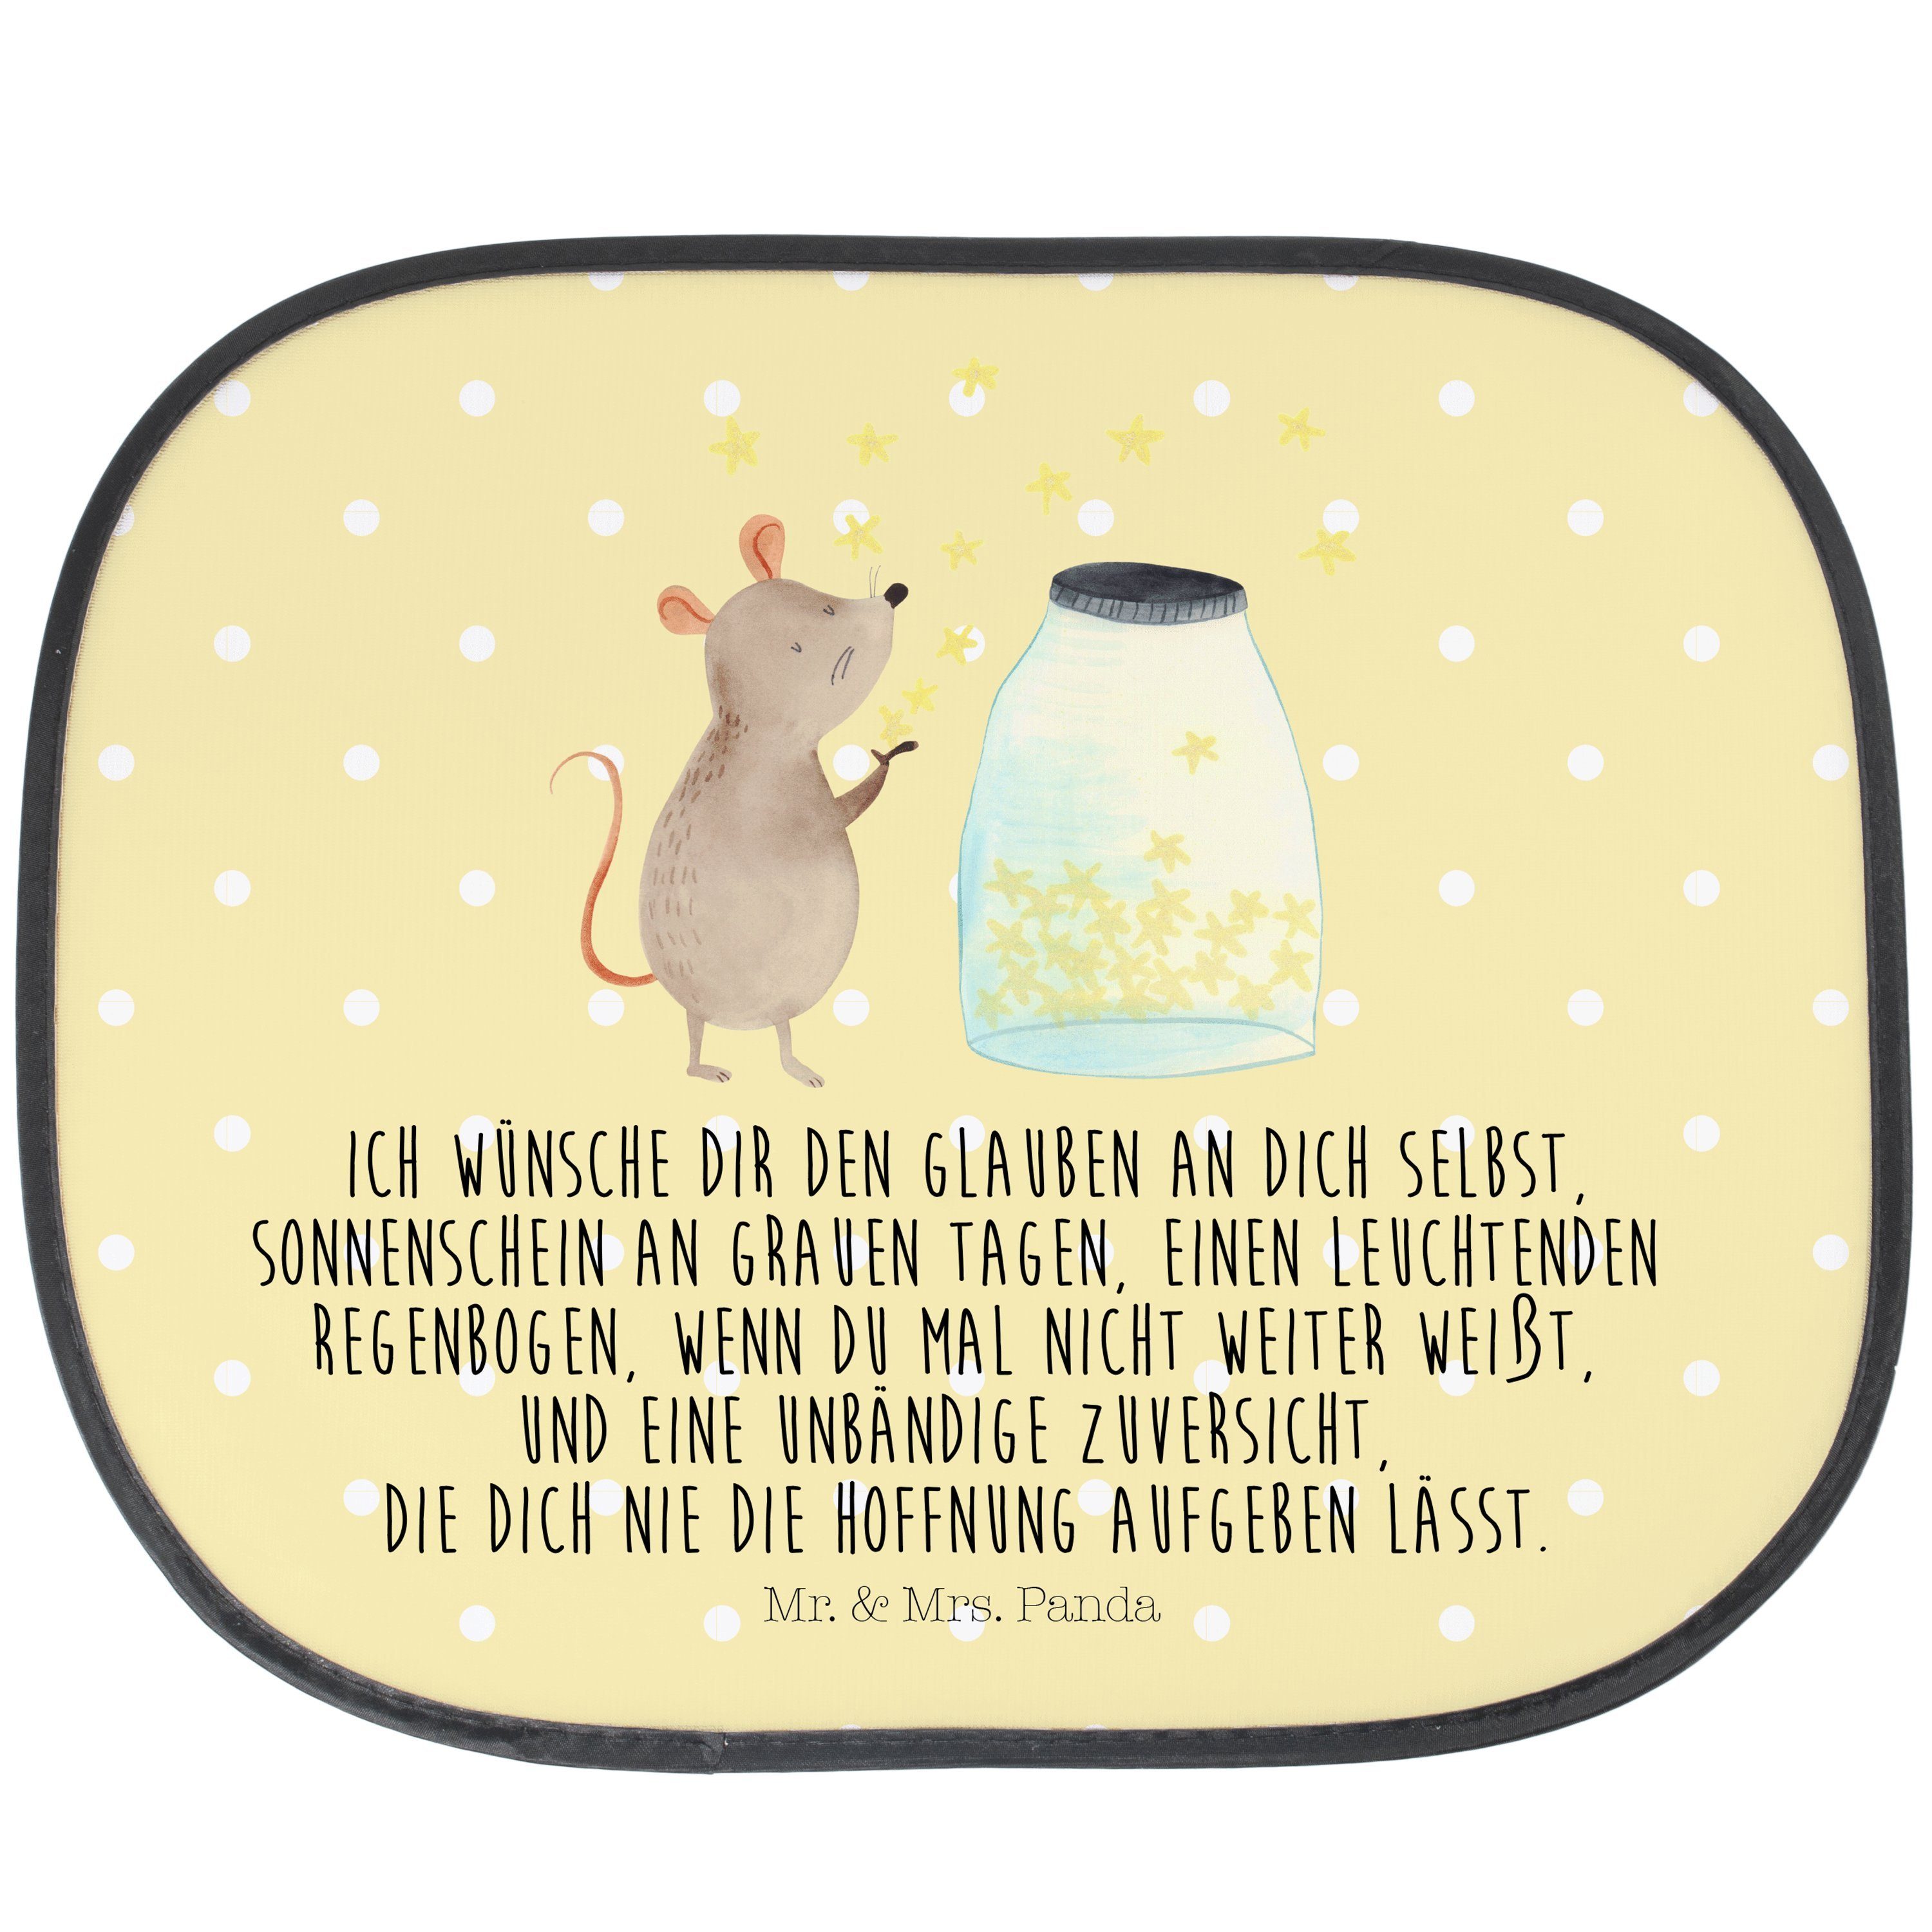 Sonnenschutz Maus Sterne - Gelb Pastell - Geschenk, lustige Sprüche, Träume, Schwa, Mr. & Mrs. Panda, Seidenmatt